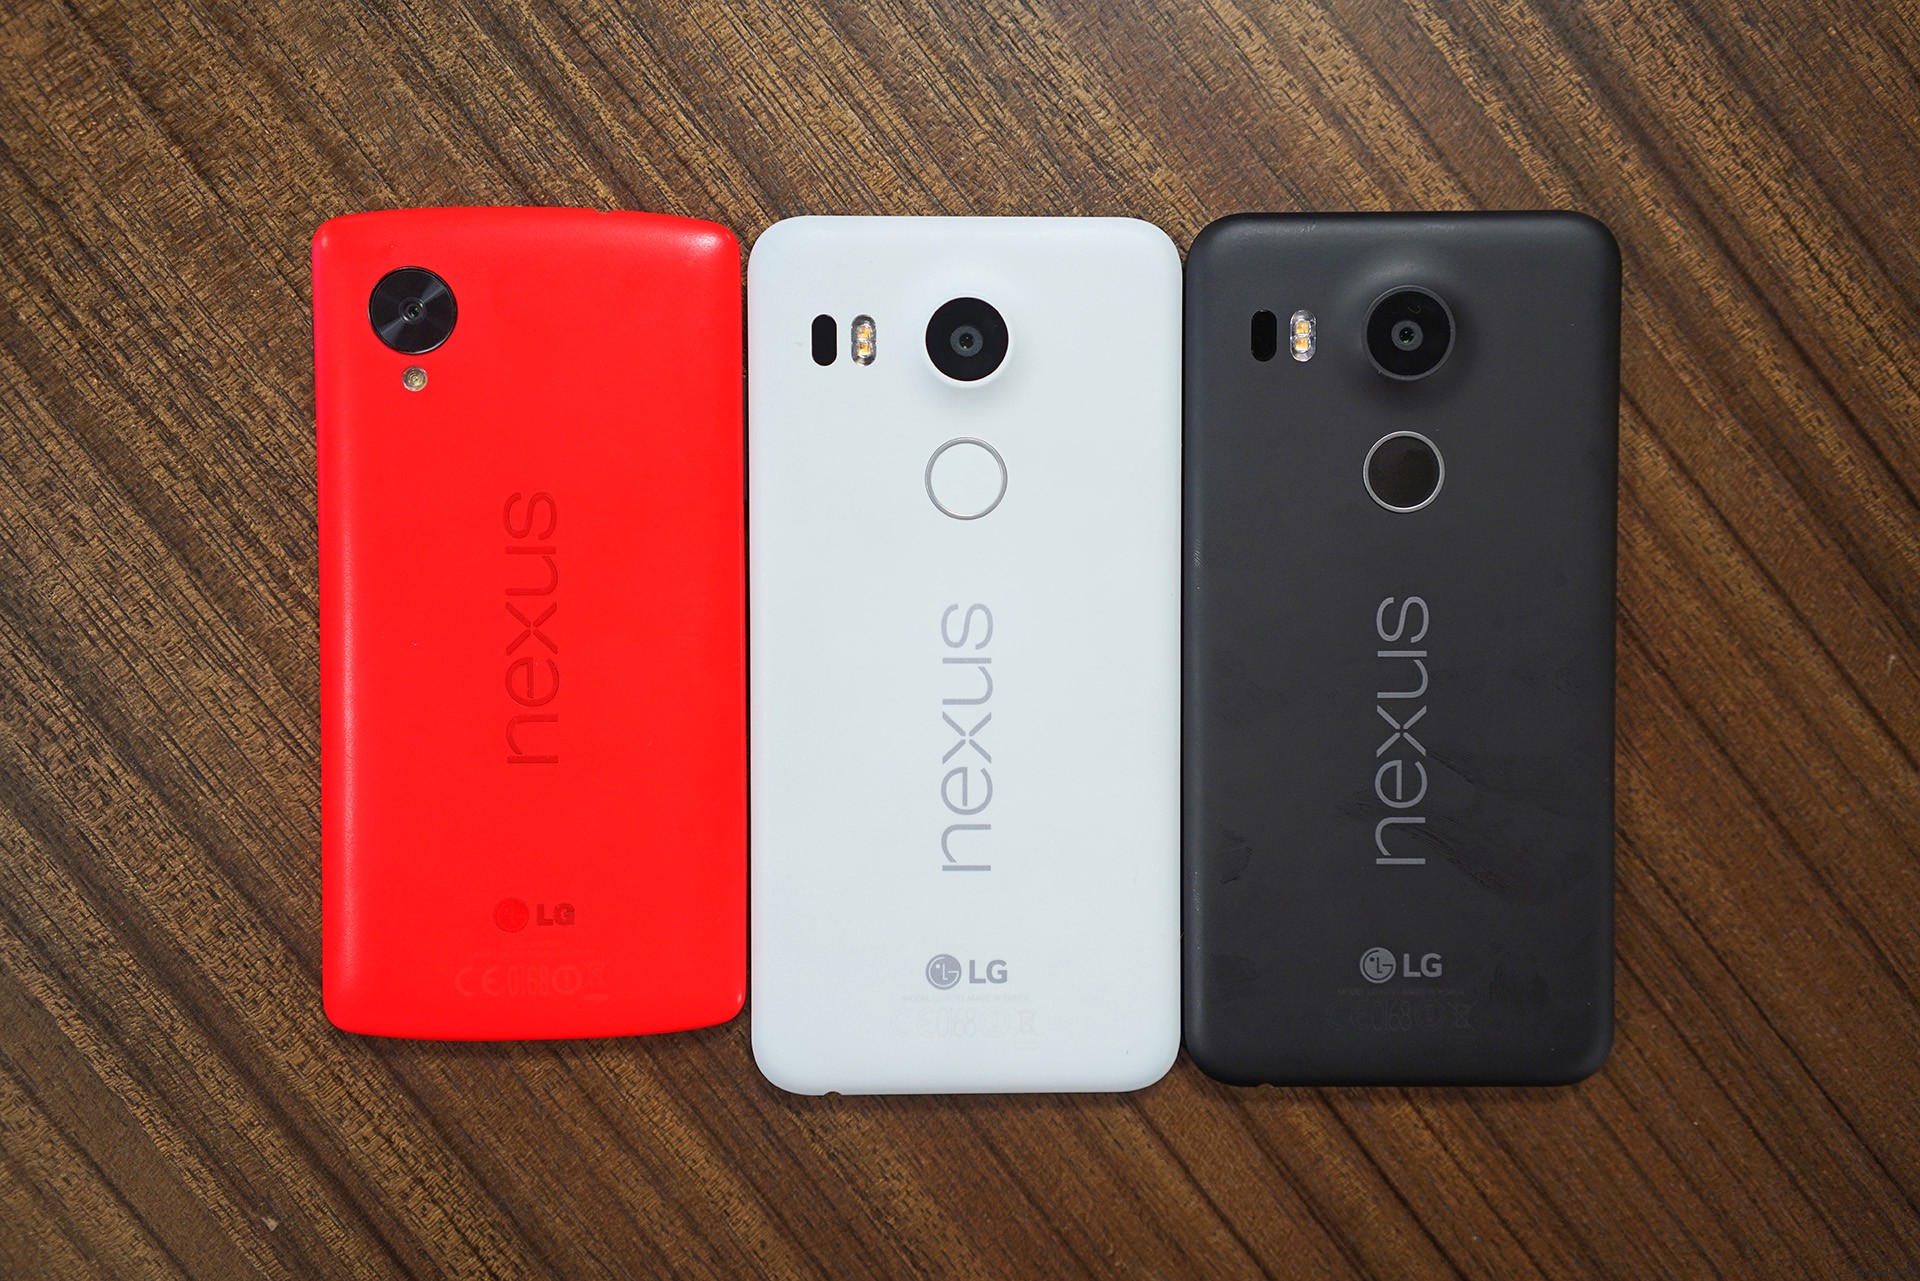  Nexus 5X